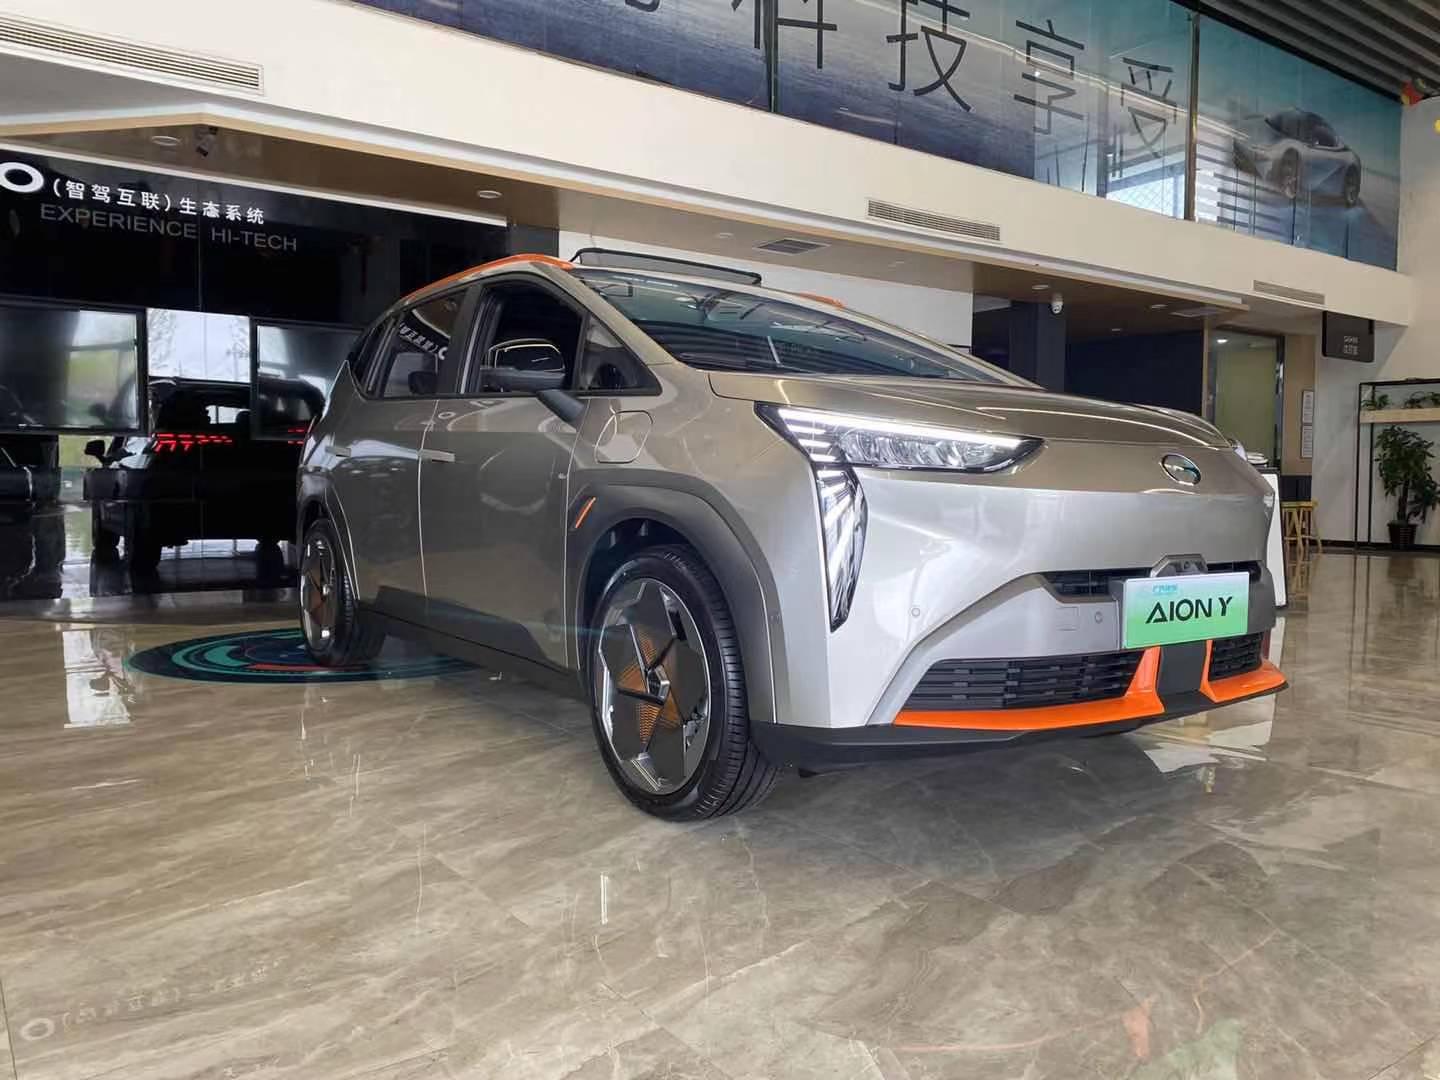 广汽埃安宣布旗下第四款车型aiony 开启预售,定位紧凑